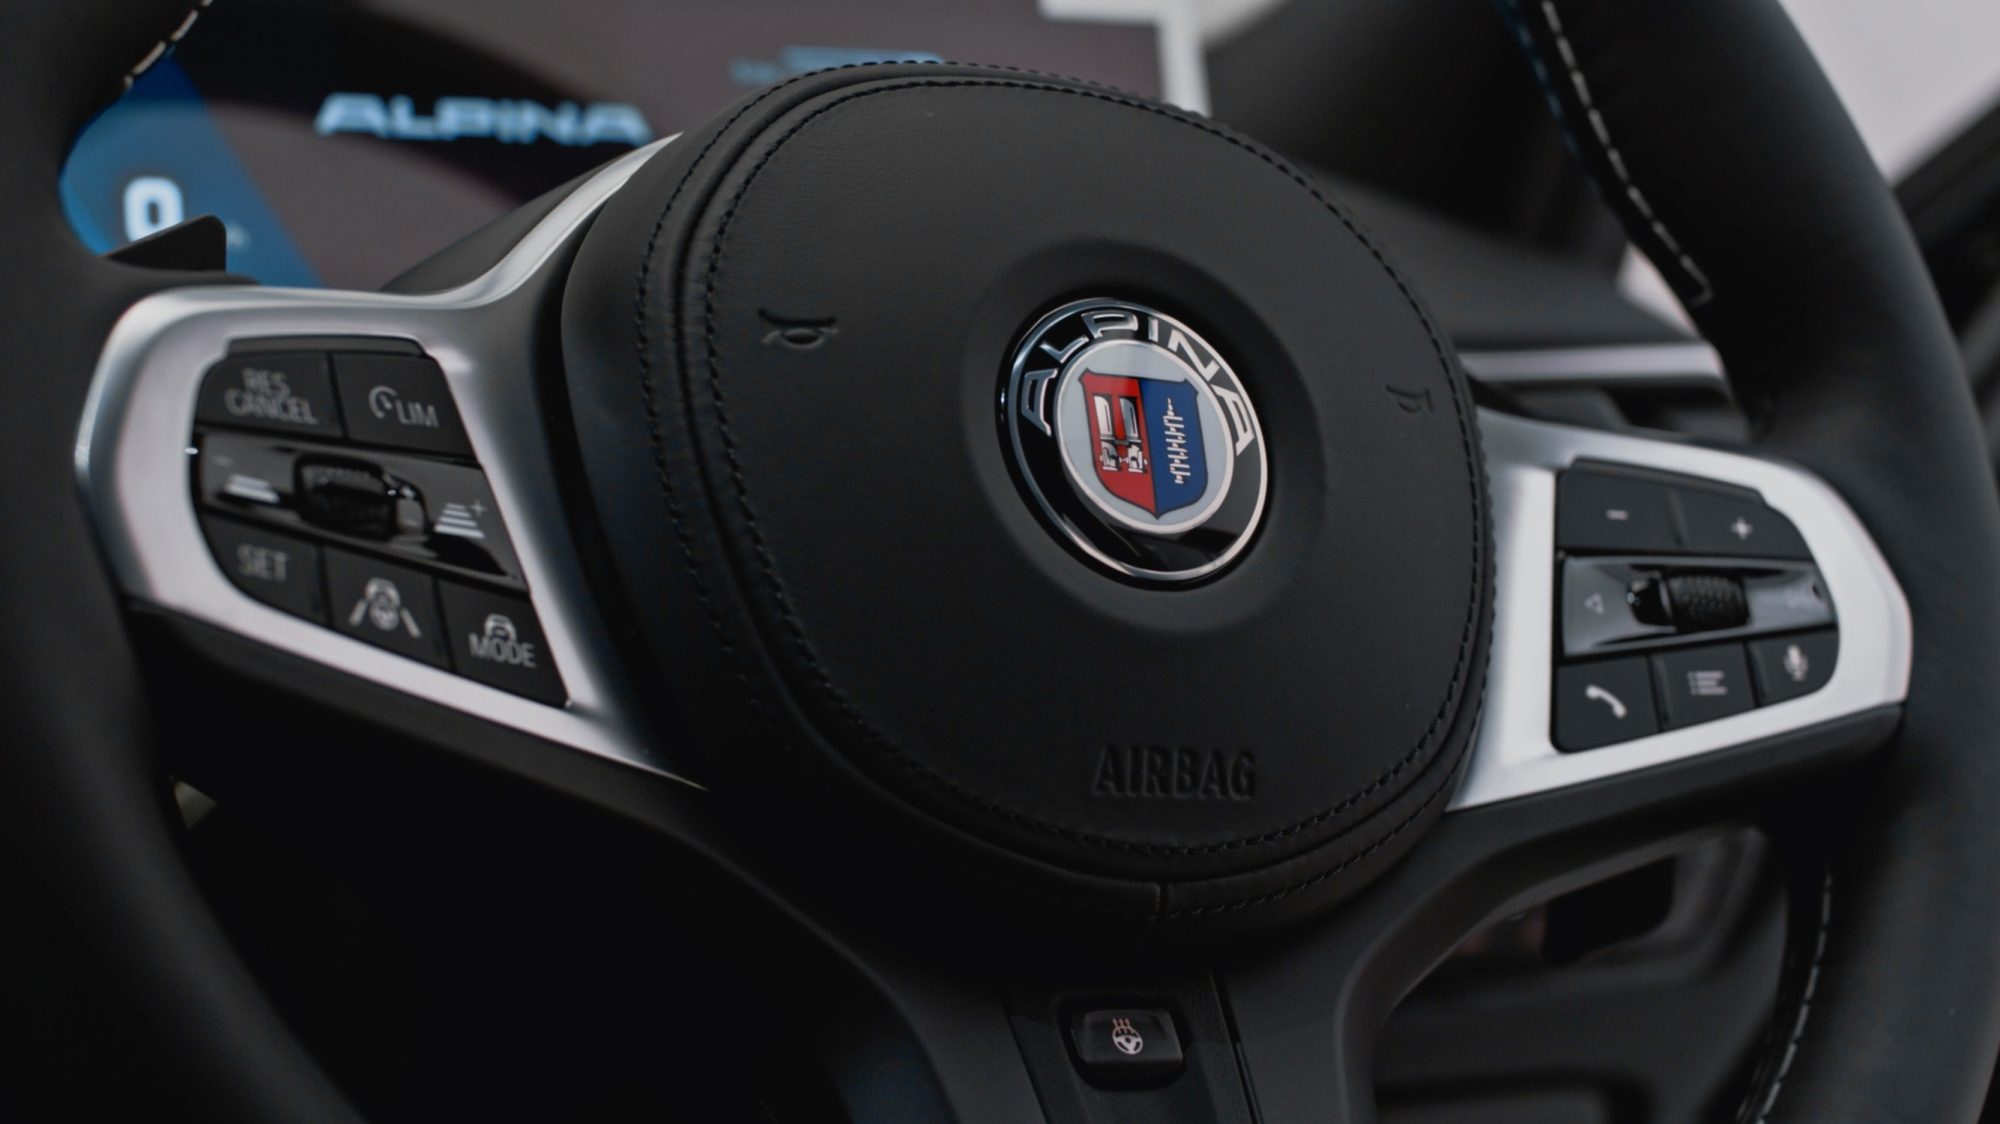 Alpina představuje model, kterým oslavuje 50leté působení automobilky BMW v Jihoafrické republice. Vznikne ho pouhých 5 kusů